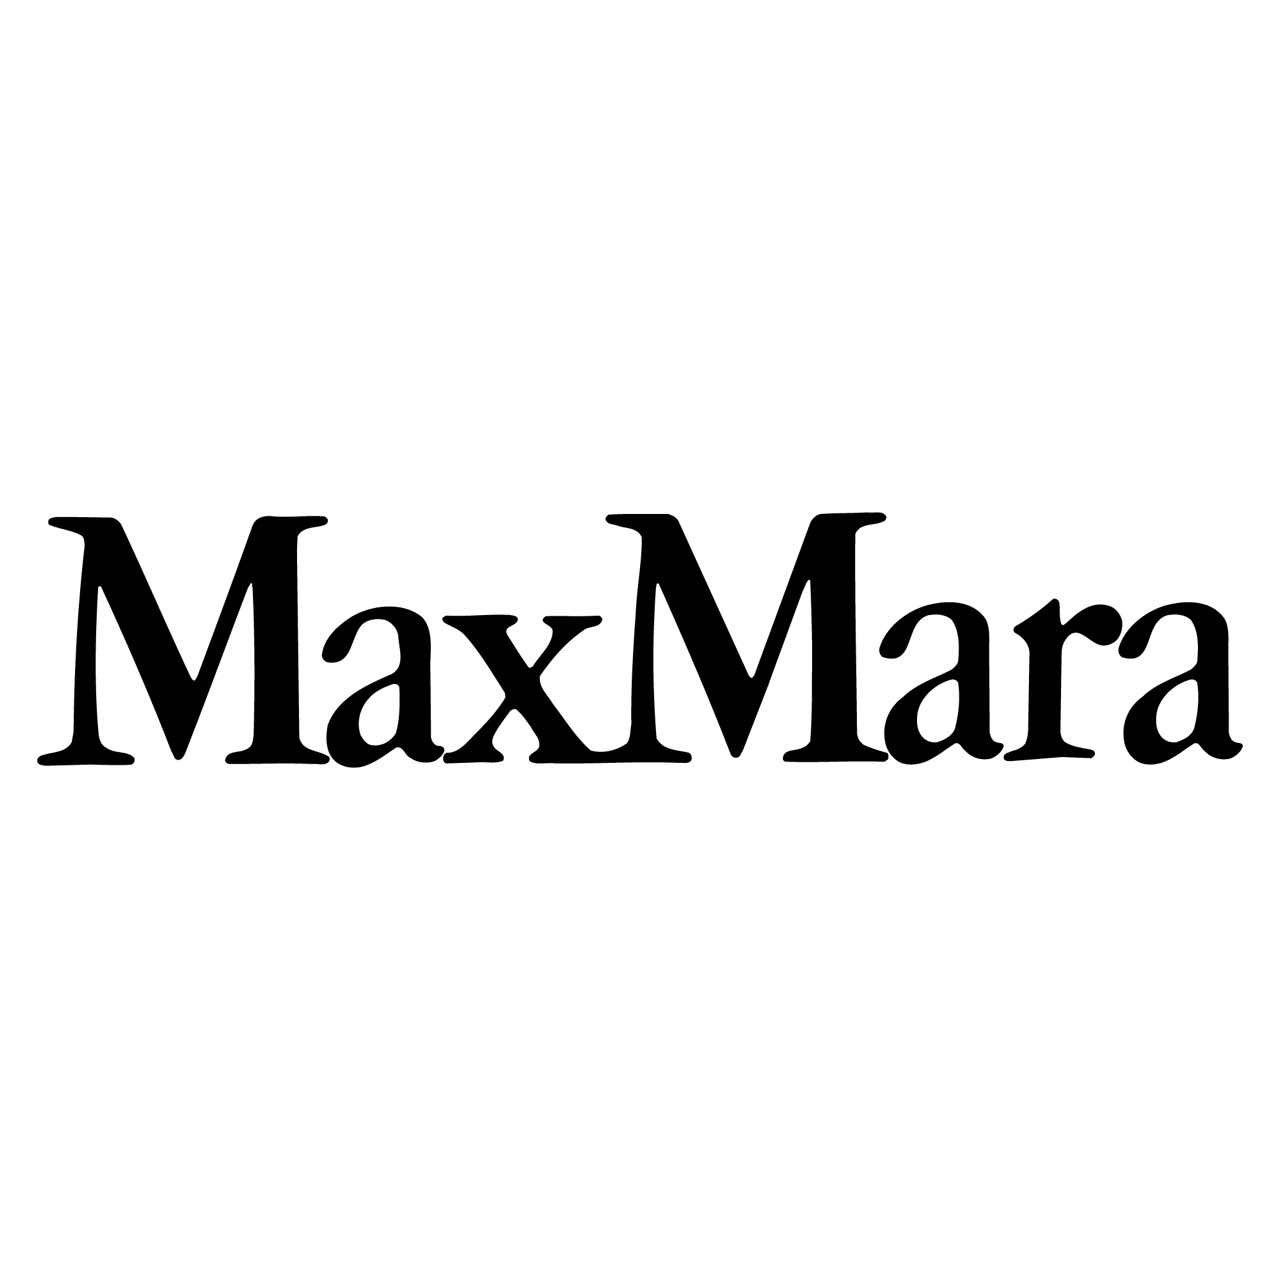 Max Mara - Abbigliamento donna Cagliari